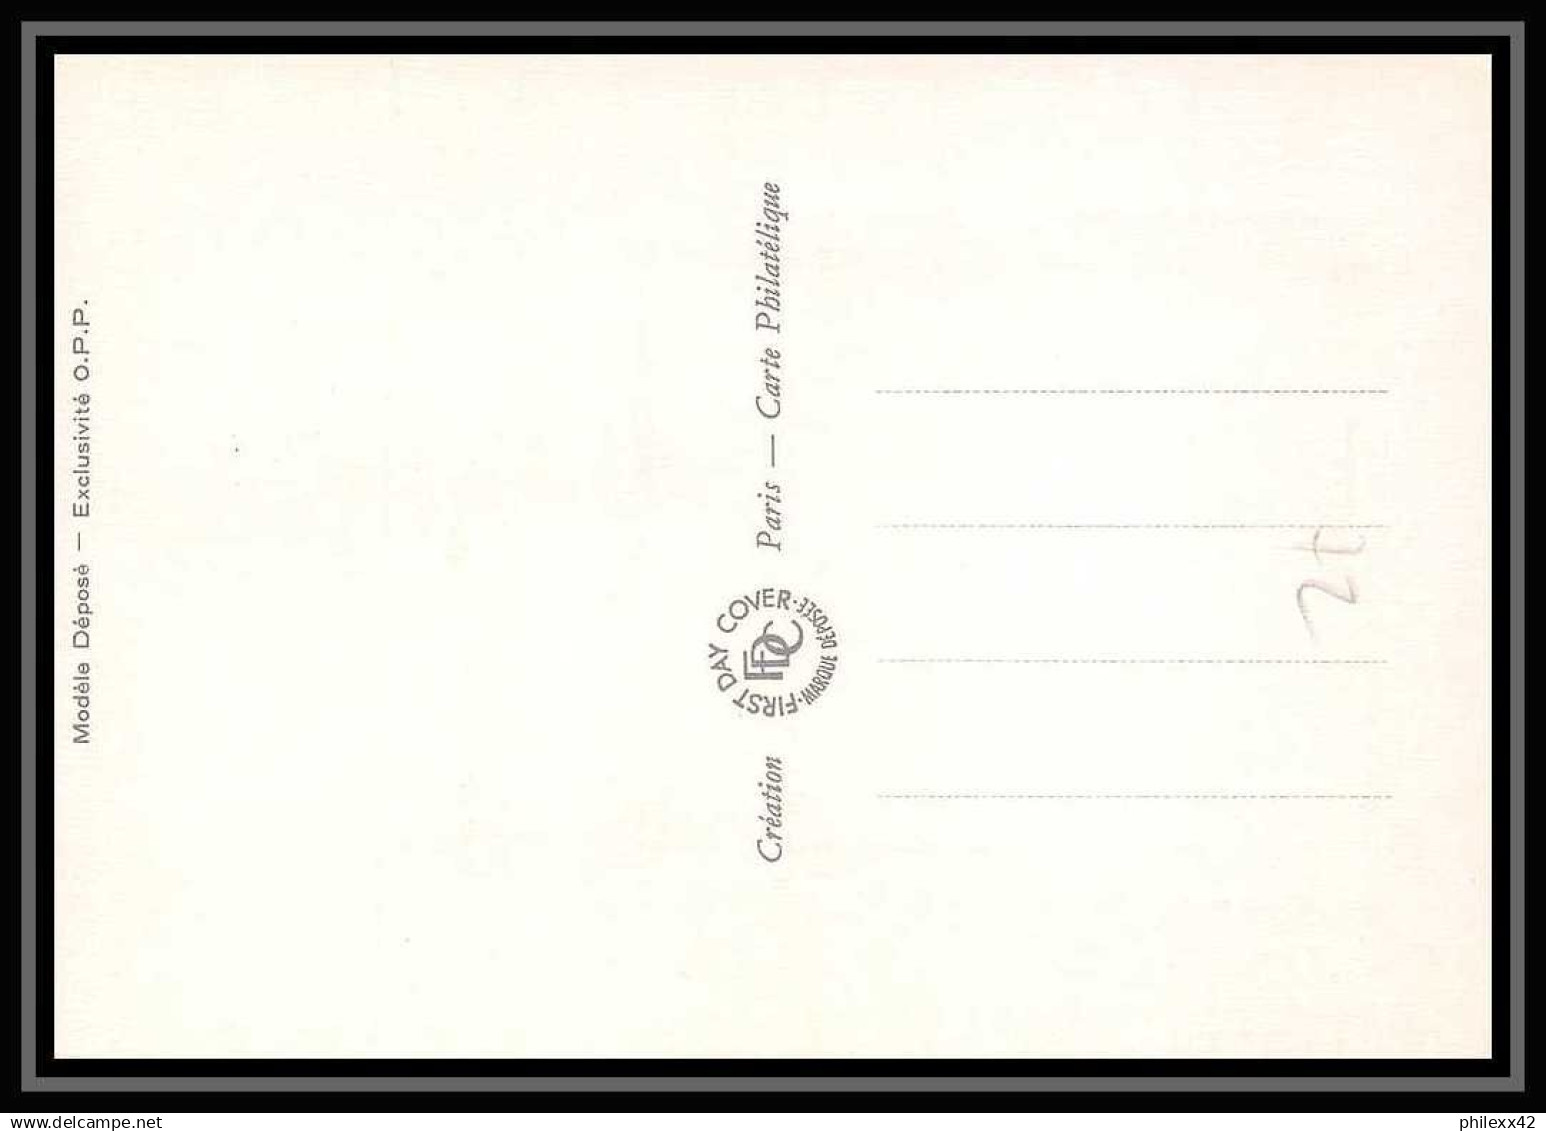 3940/ Carte maximum (card) France N°2178/2190 Type Liberté de delacroix complet fdc edition fdc 1982